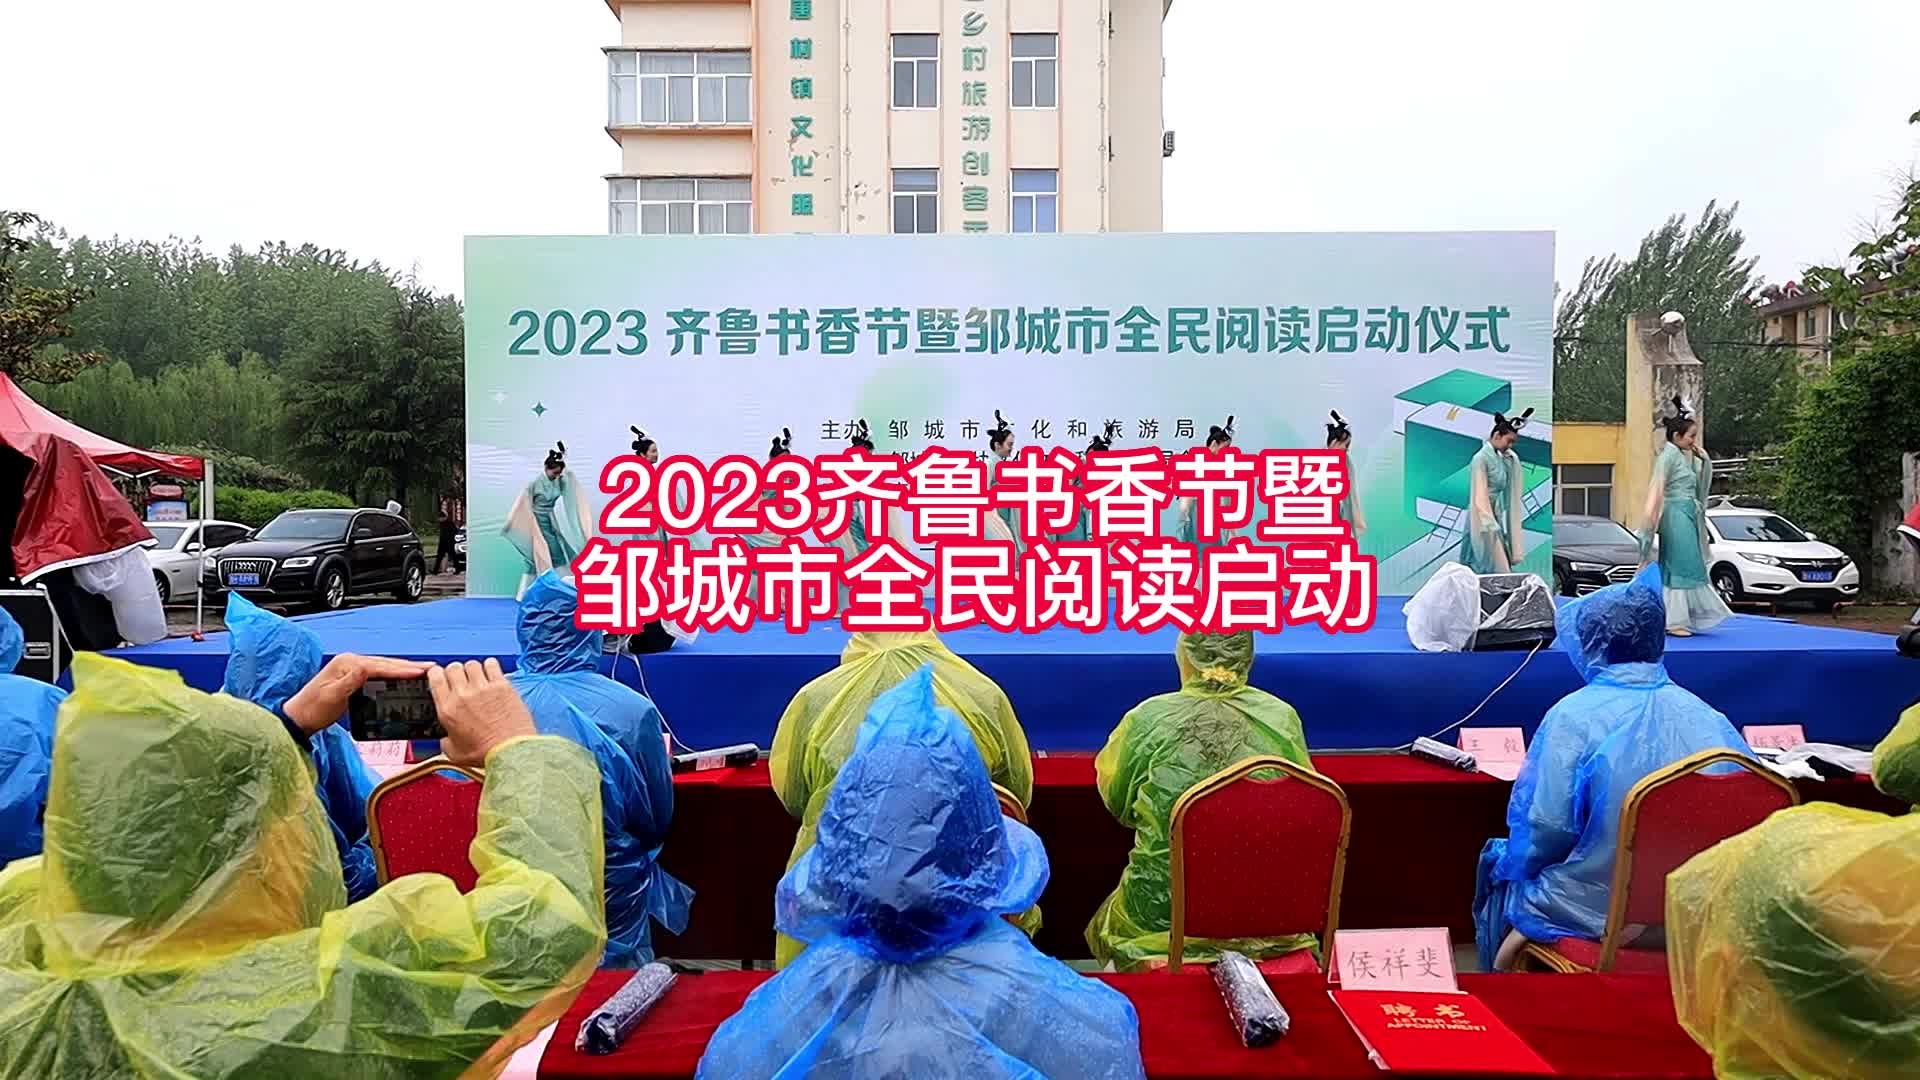 【邹视频·新闻】35秒| 2023齐鲁书香节暨邹城市全民阅读启动